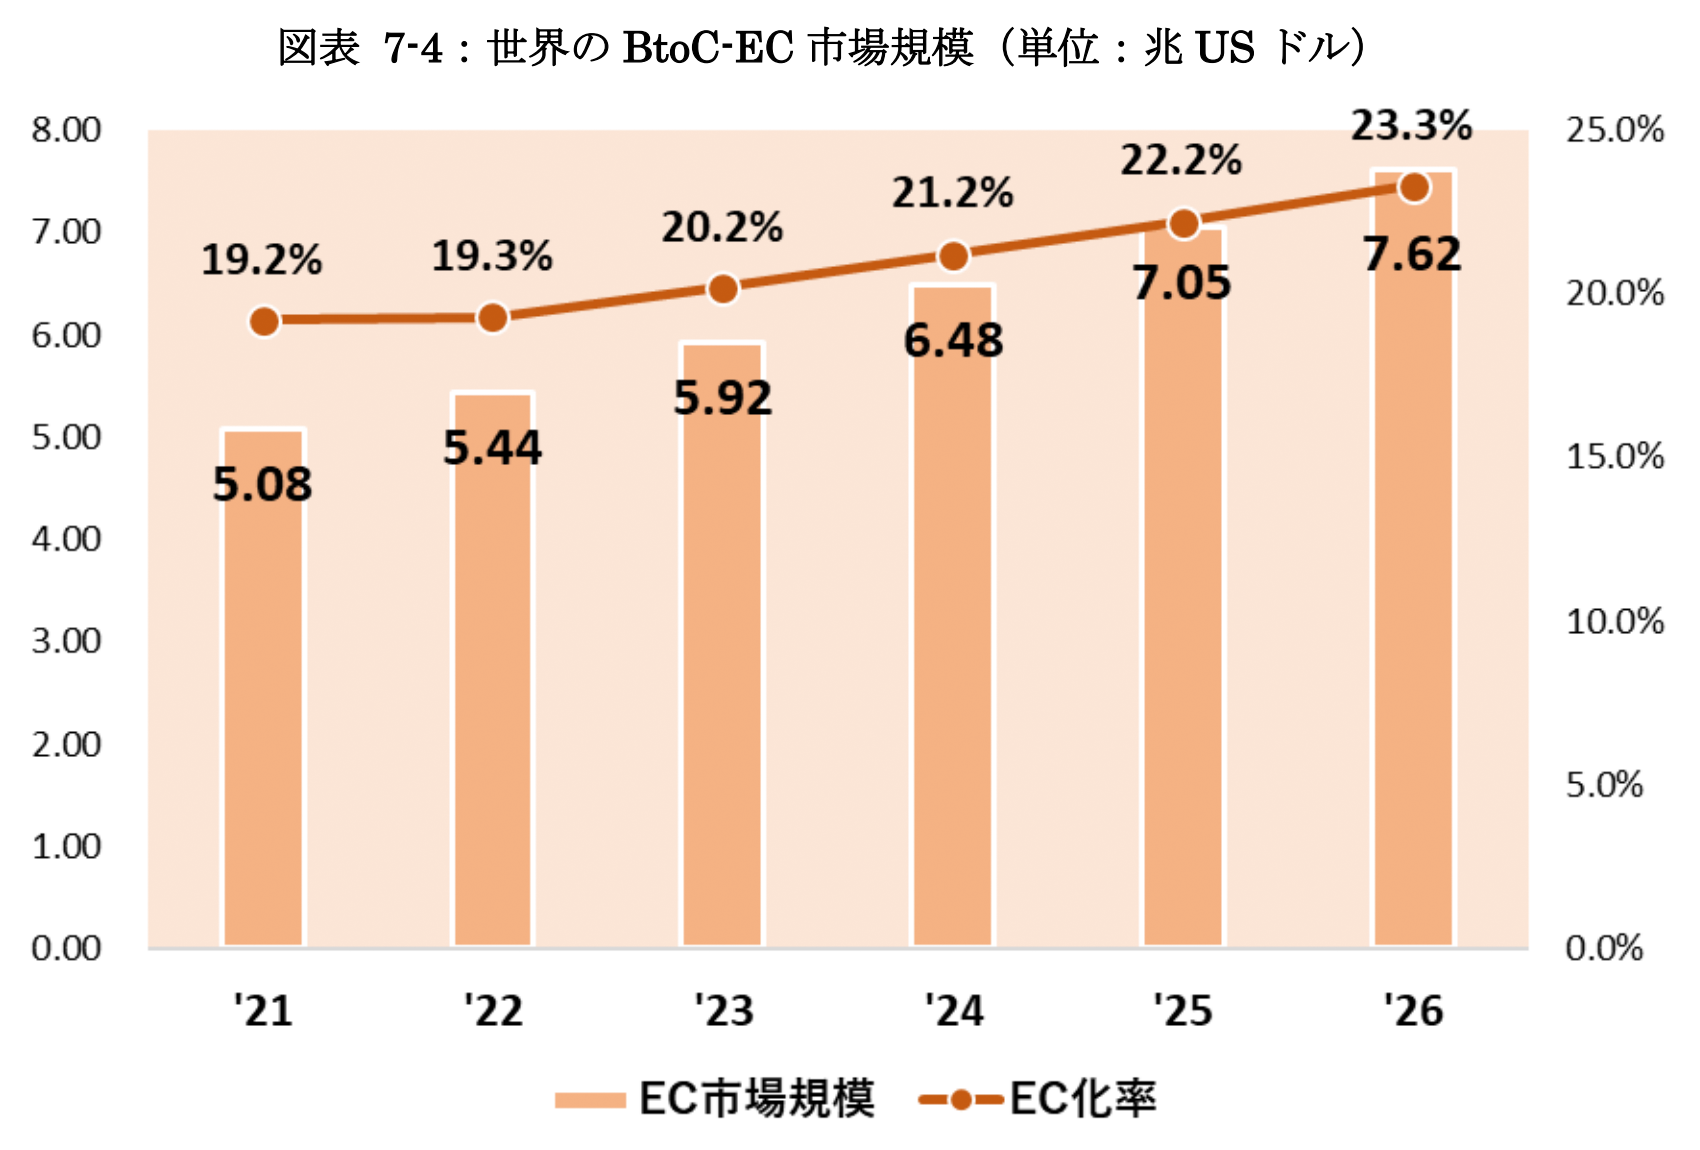 世界のBtoC-EC市場規模図